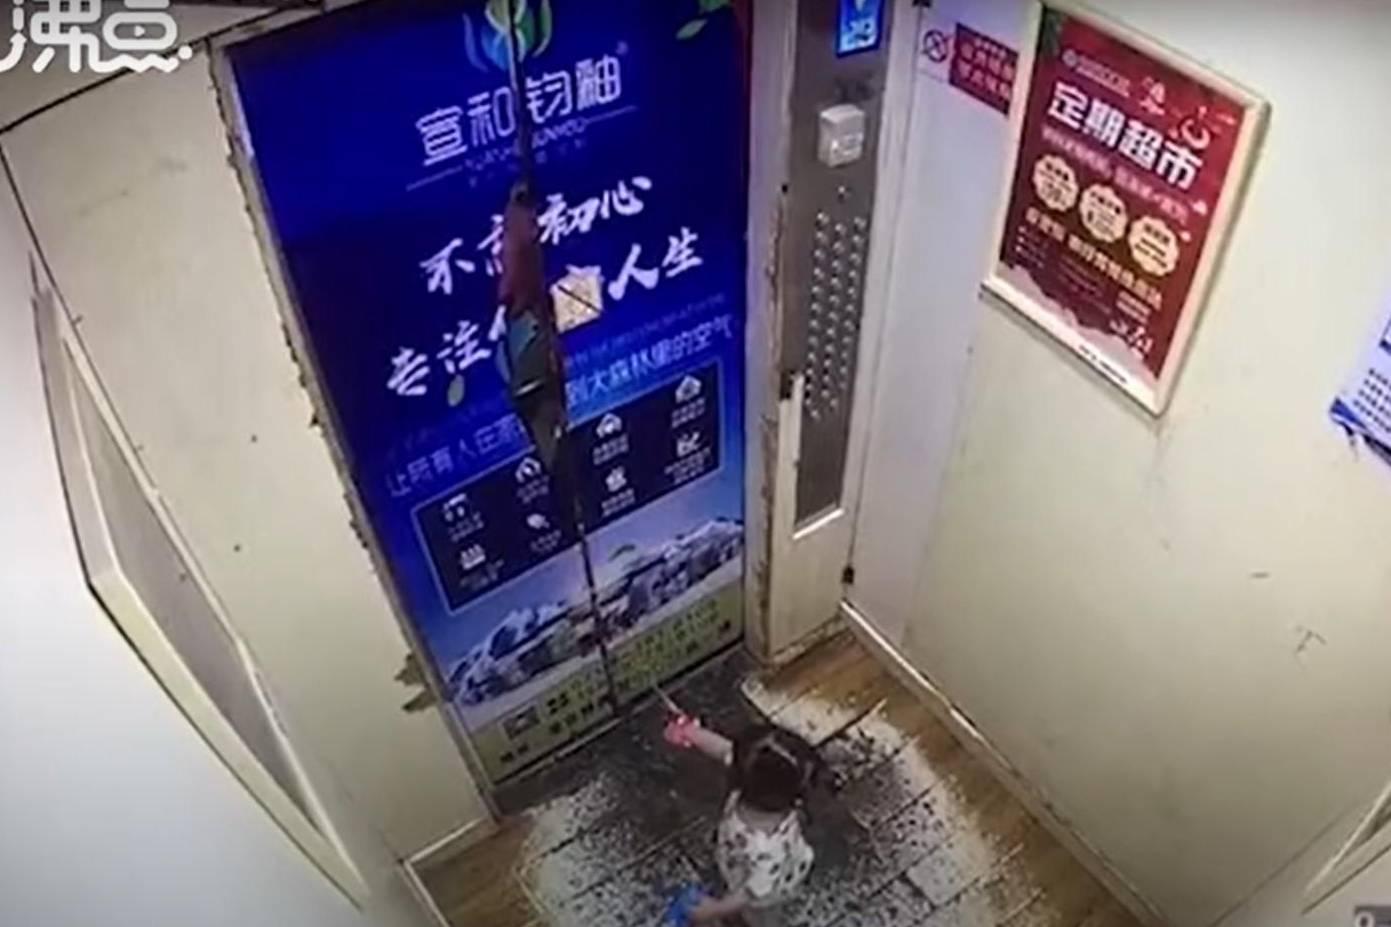 Ребёнка подбросило под потолок, когда двери лифта закрылись и зажали поводок на его руке — видео